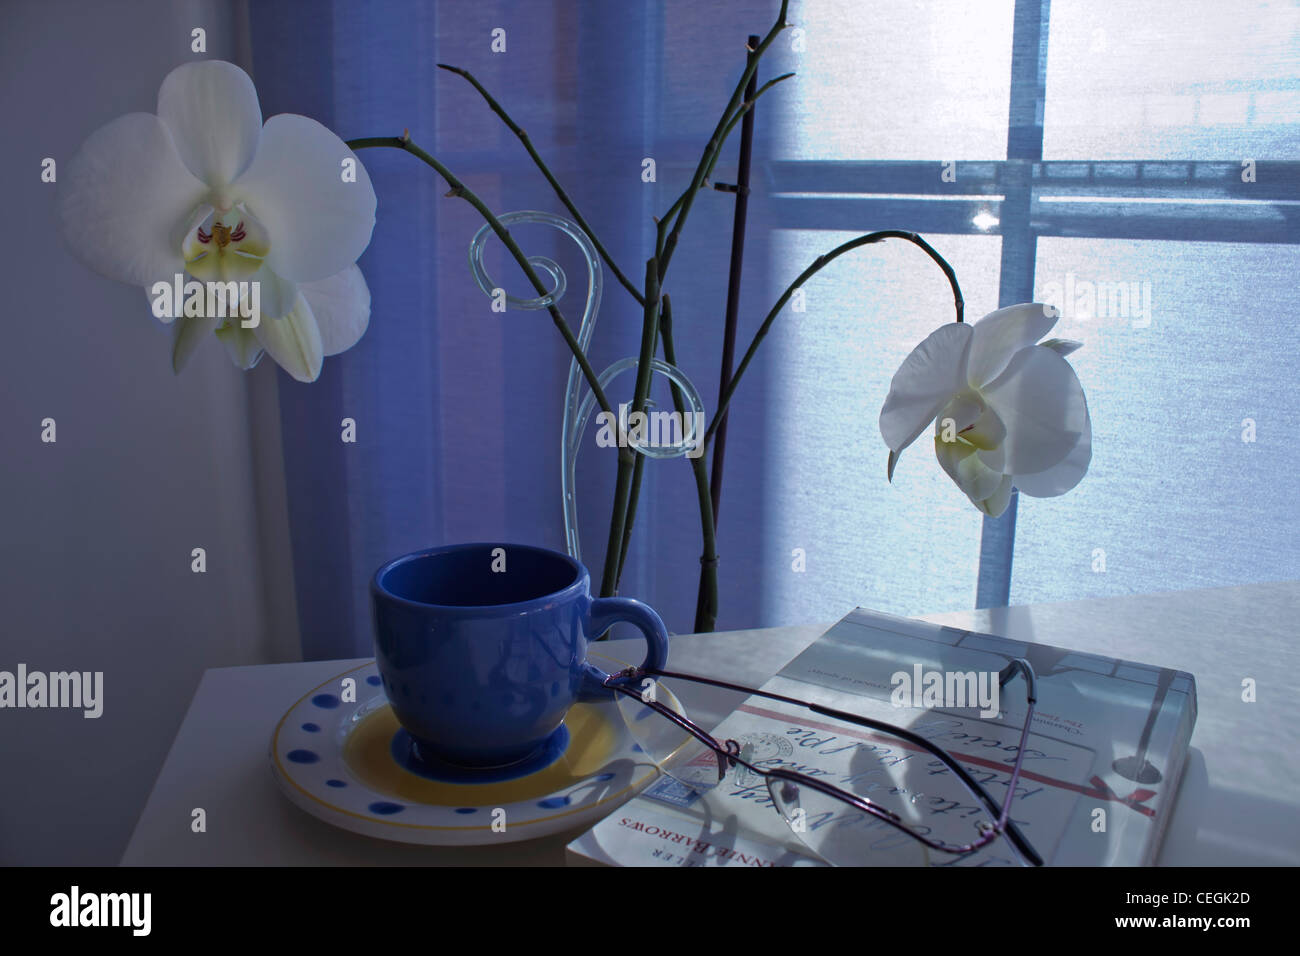 Tazza e piattino, libro e i bicchieri sul tavolo di fronte a piante di orchidee. Foto Stock